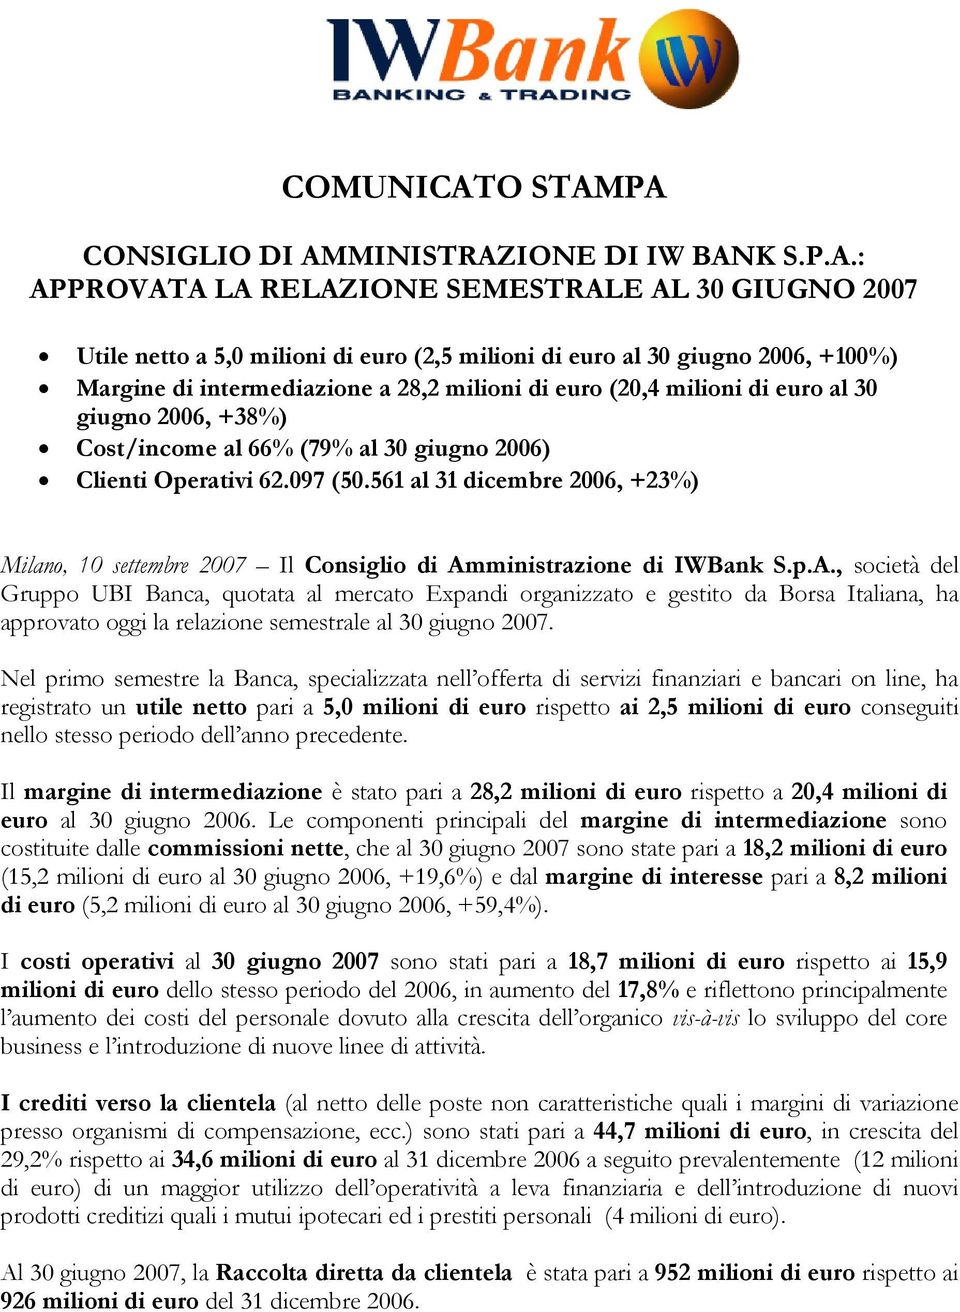 PA CONSIGLIO DI AMMINISTRAZIONE DI IW BANK S.P.A.: APPROVATA LA RELAZIONE SEMESTRALE AL 30 GIUGNO 2007 Utile netto a 5,0 milioni di euro (2,5 milioni di euro al 30 giugno 2006, +100%) Margine di